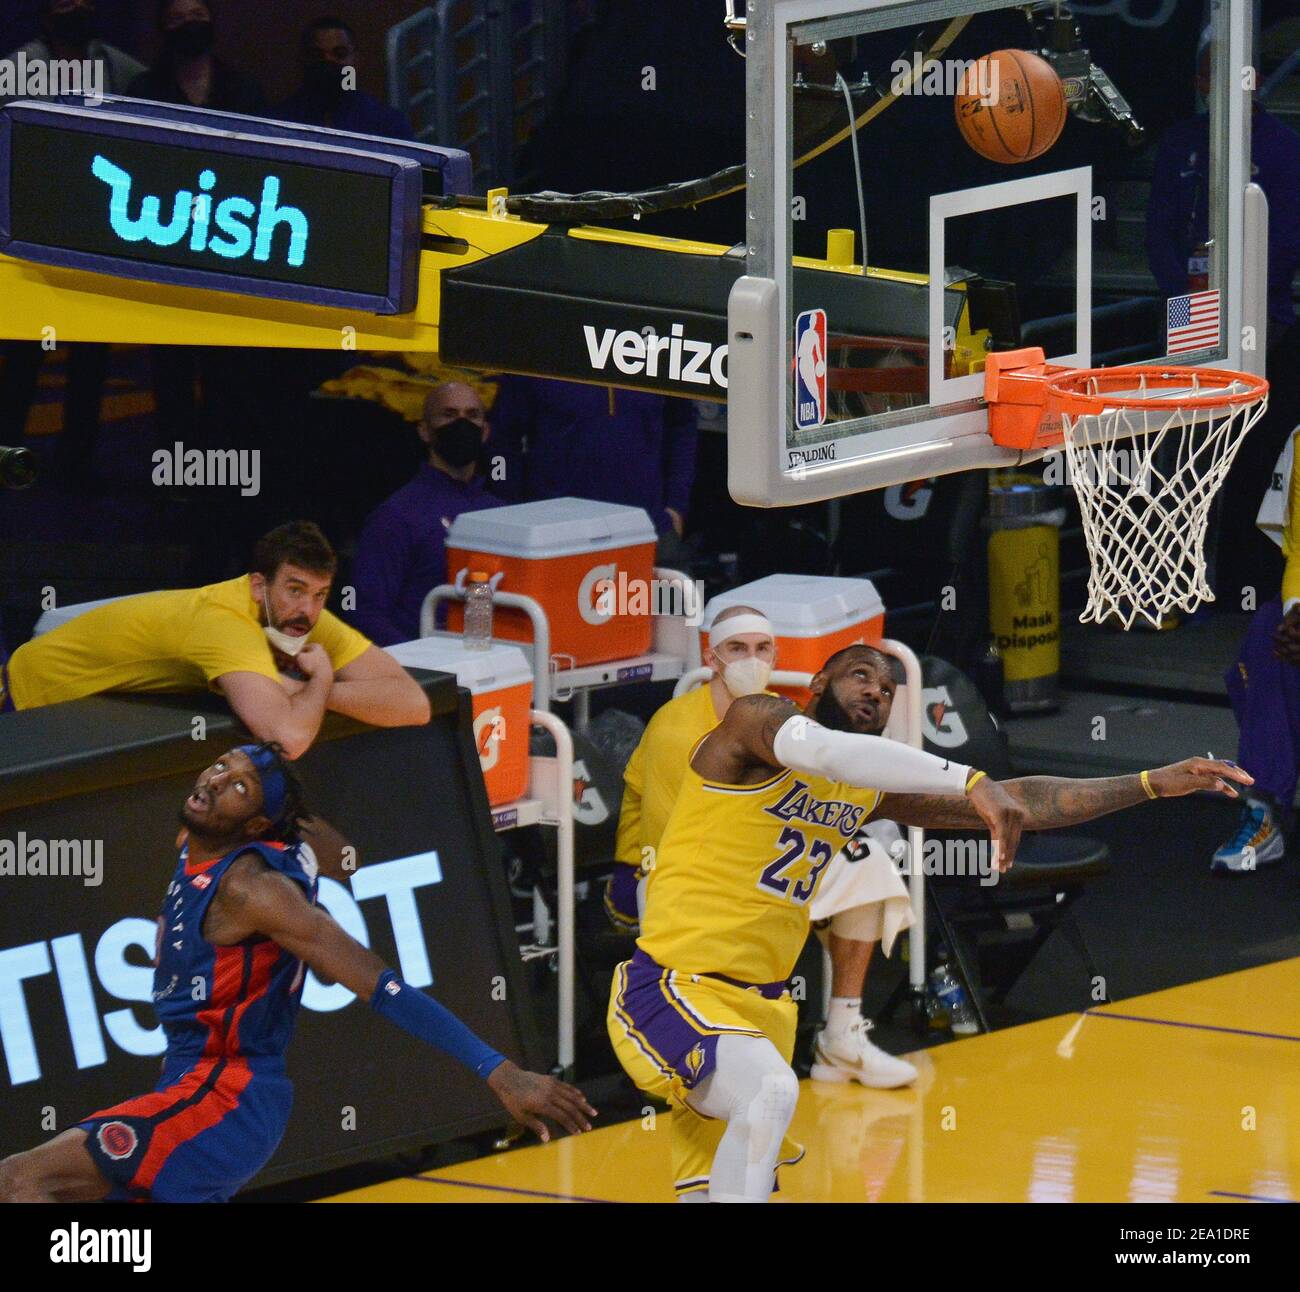 Los Angeles, Usa. Februar 2021, 6th. Los Angeles Lakers' Forward LeBron James schmiss den Schuss von Detroit Pistons Wache Jerami Grant während des sechsten Quartals (zweite Überstunden) im Staples Center in Los Angeles am Samstag, 6. Februar 2021. Die Lakers besiegten die Kolben 135-129 in Doppelüberstunden. Foto von Jim Ruymen/UPI Kredit: UPI/Alamy Live Nachrichten Stockfoto